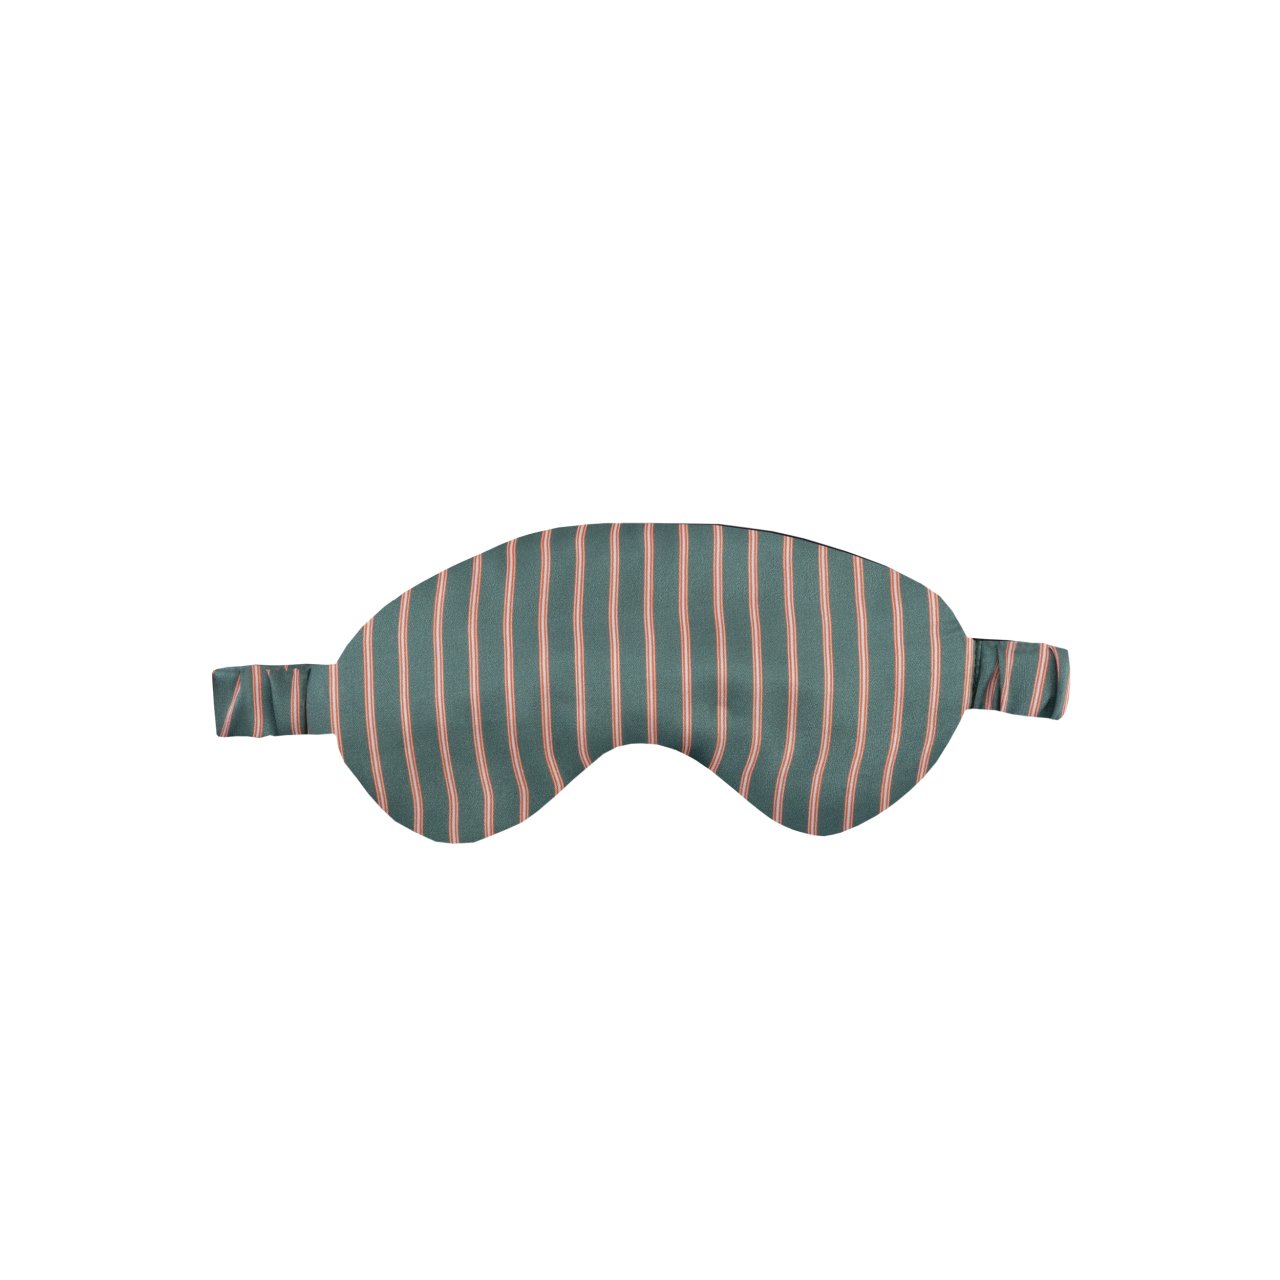 İpek Uyku Maskesi - Mint Stripe